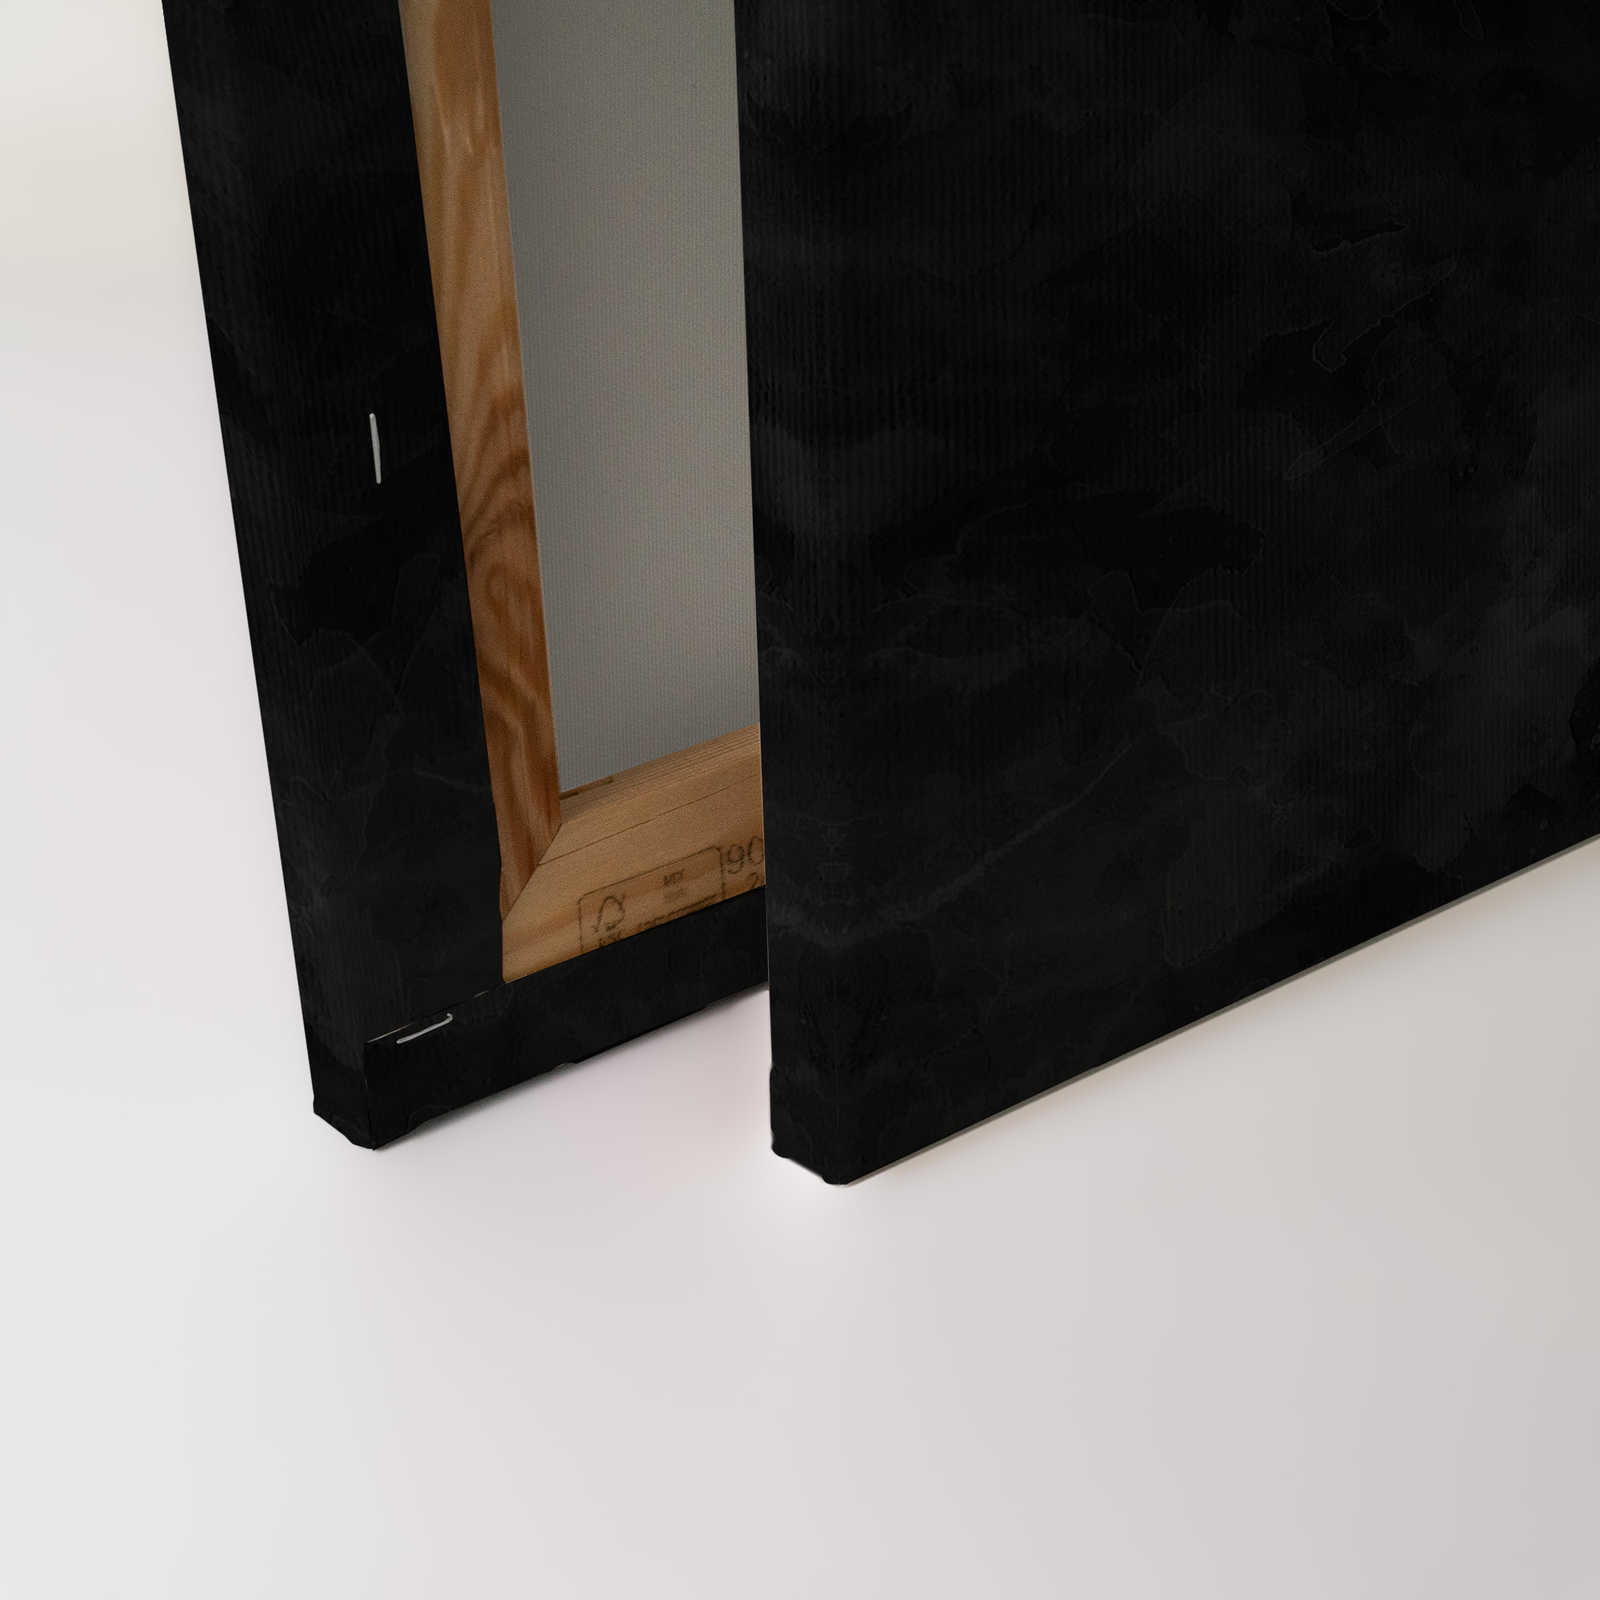             Koi Leinwandbild Schwarz-Weiß im Kreidetafel-Look – 0,90 m x 0,60 m
        